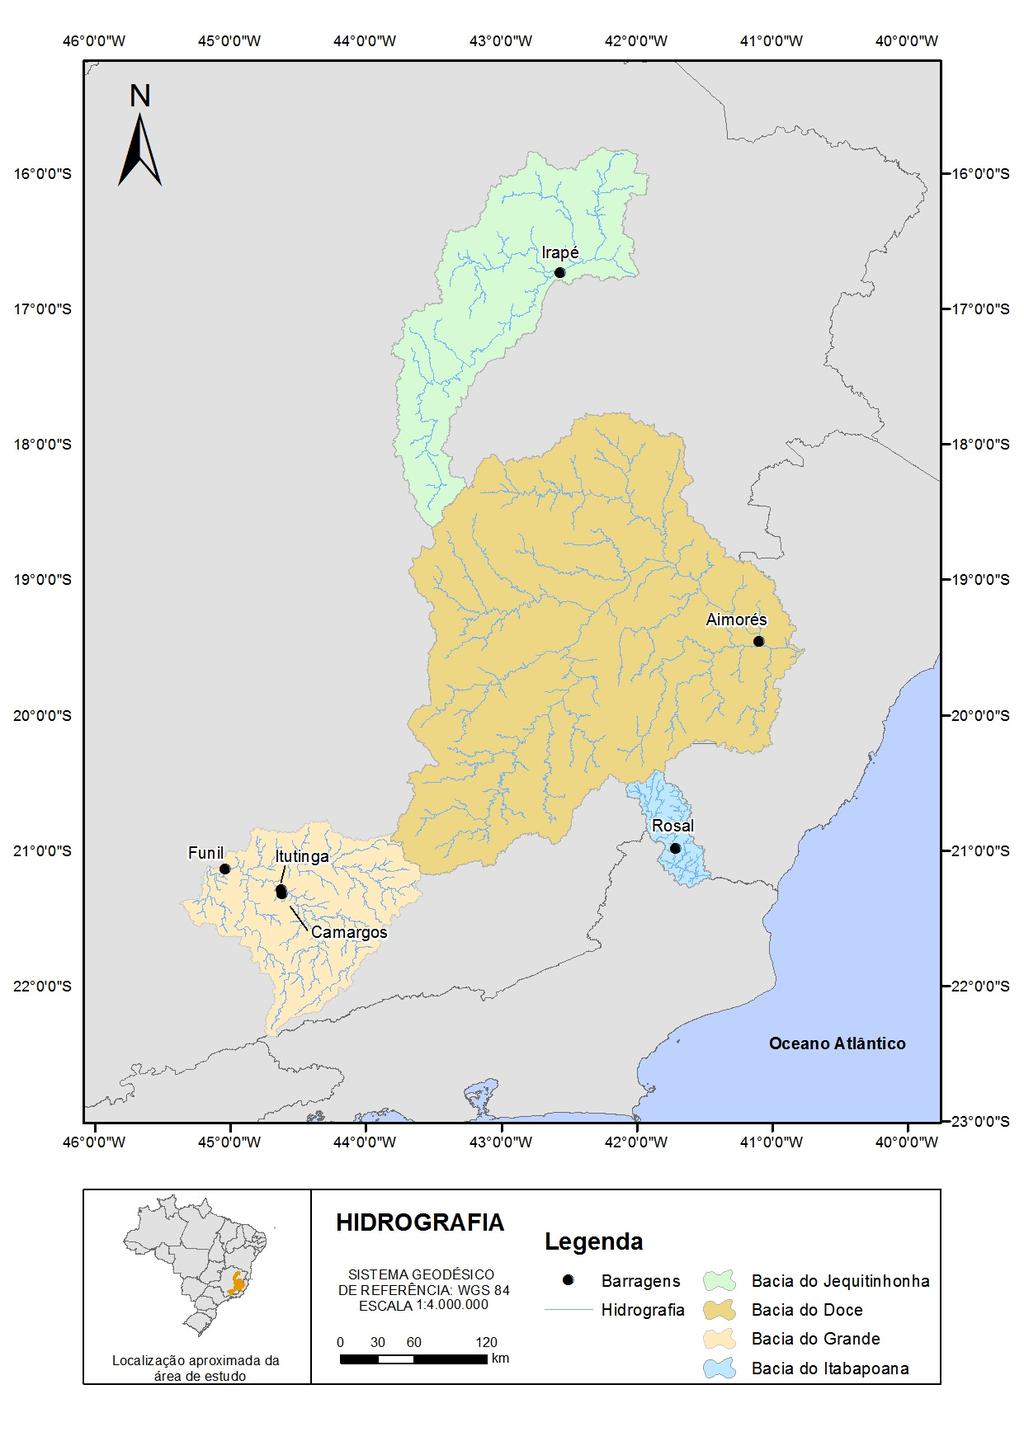 Local de estudo Estão sendo analisadas as regiões mostradas na figura 1 que representam as bacias hidrográficas contribuintes das barragens de Irapé (rio Jequitinhonha), Rosal (rio Itabapoana),